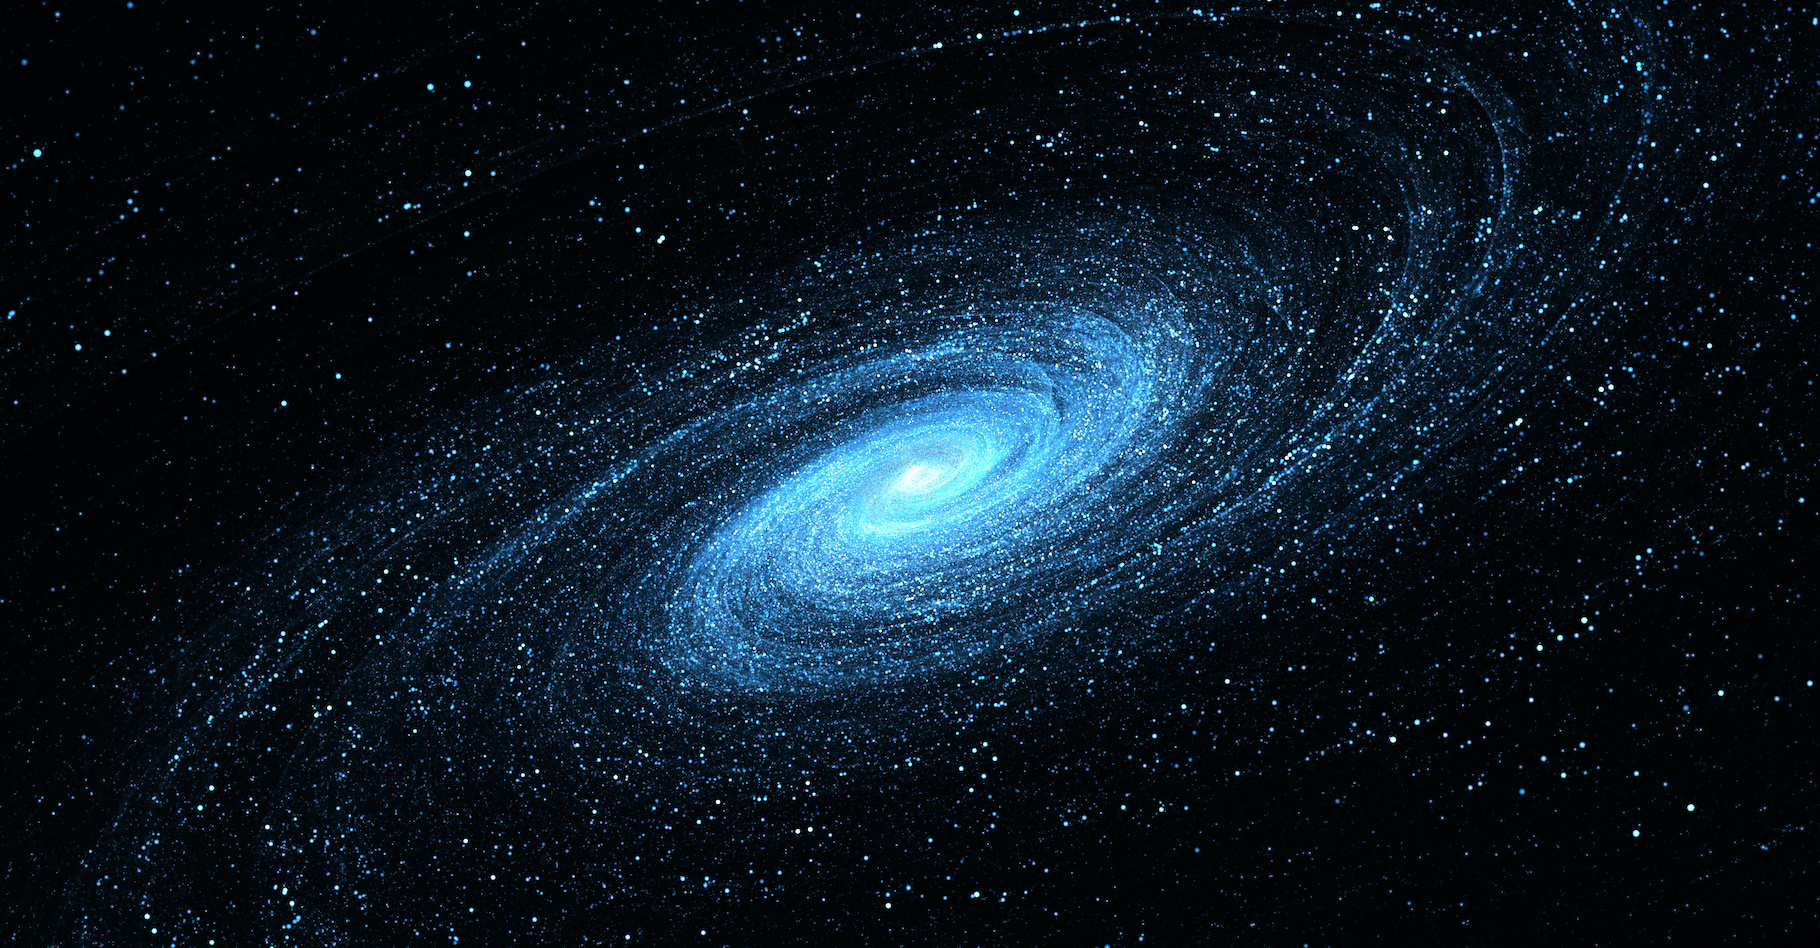 Des chercheurs de l’université de Lund (Suède) montrent comment des collisions de galaxies peuvent mener à structurer une galaxie spirale telle que la Voie lactée. © Peter Jurik, Adobe Stock